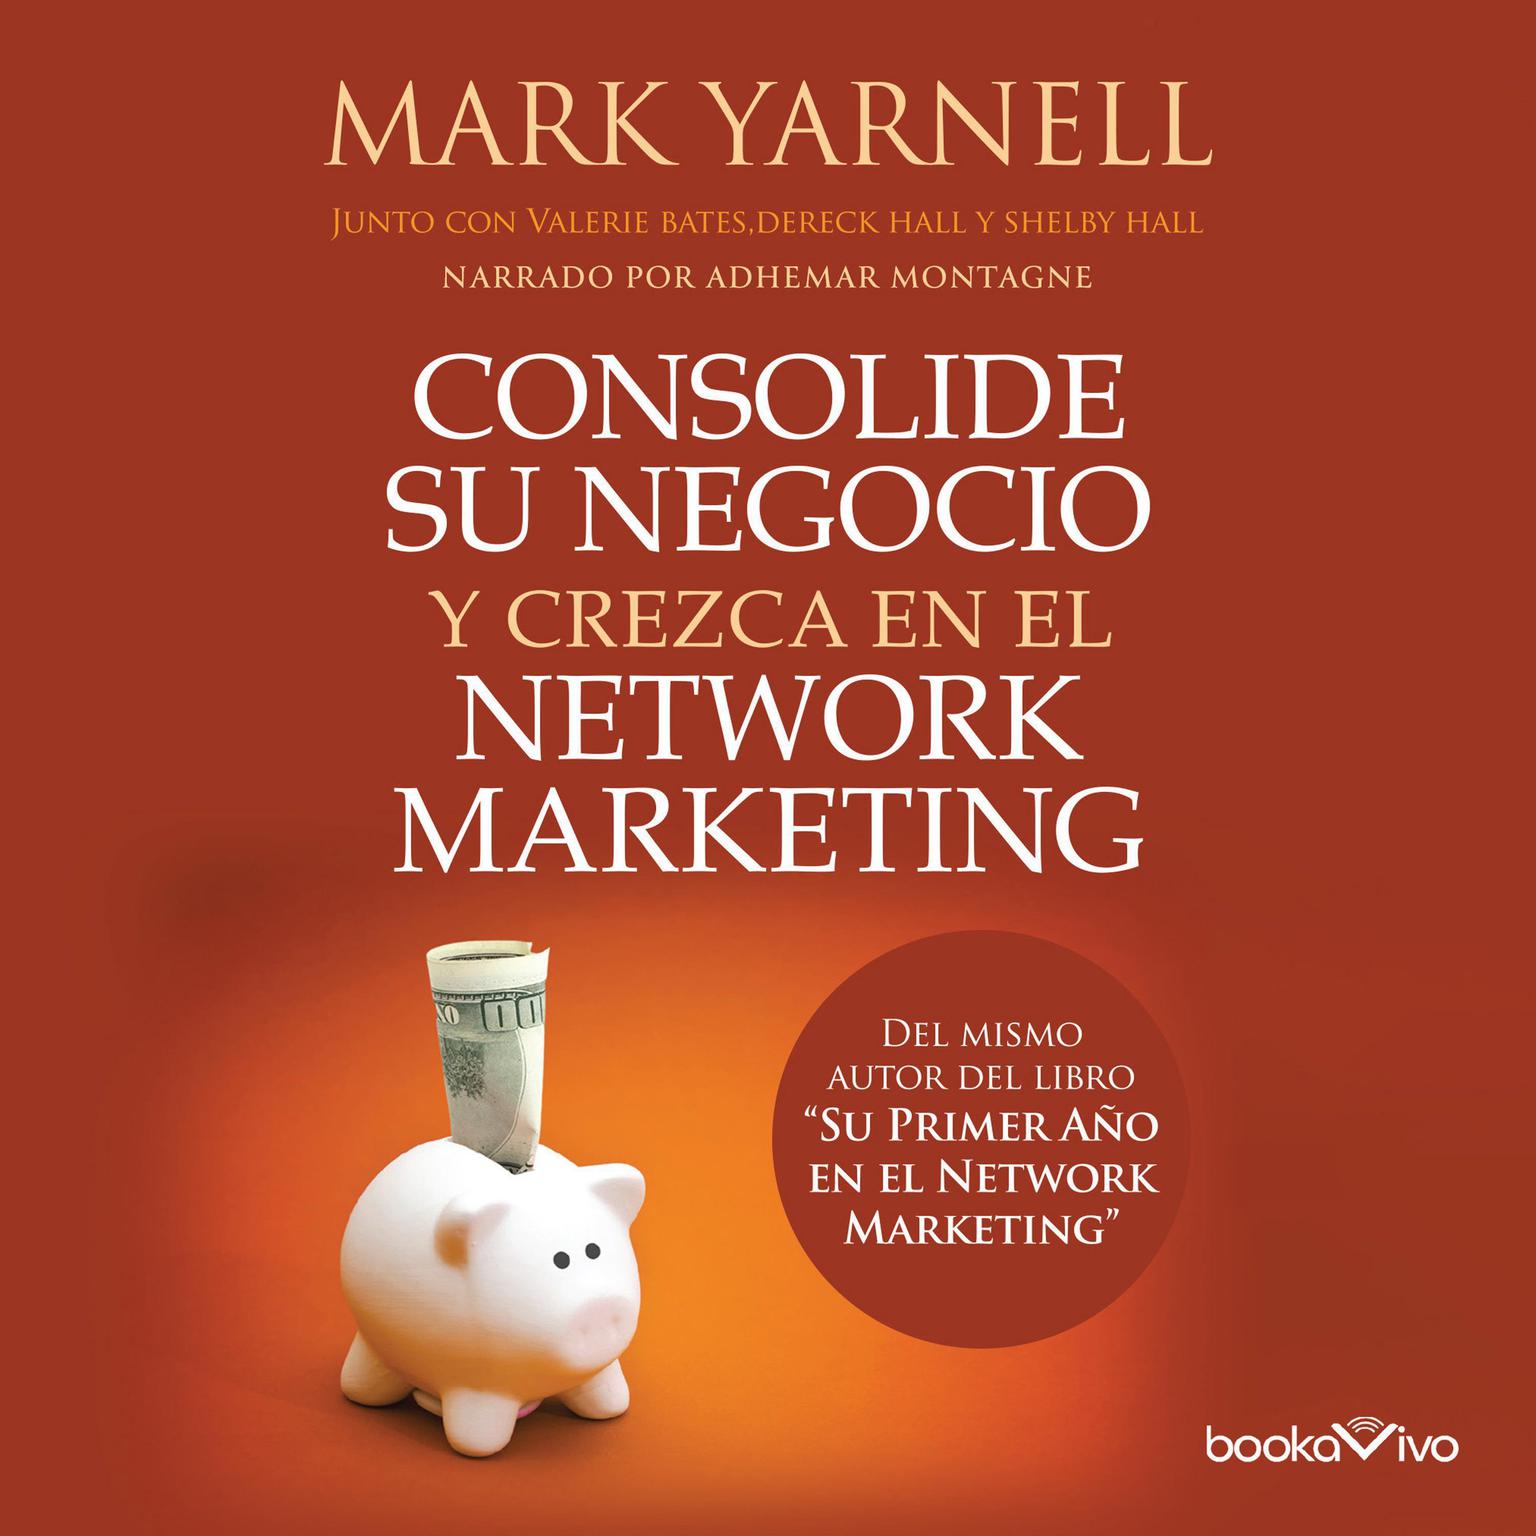 Consolide su negocio y crezca en el Network Marketing (Filthy, Stinking Rich Through Network Marketing) Audiobook, by Mark Yarnell